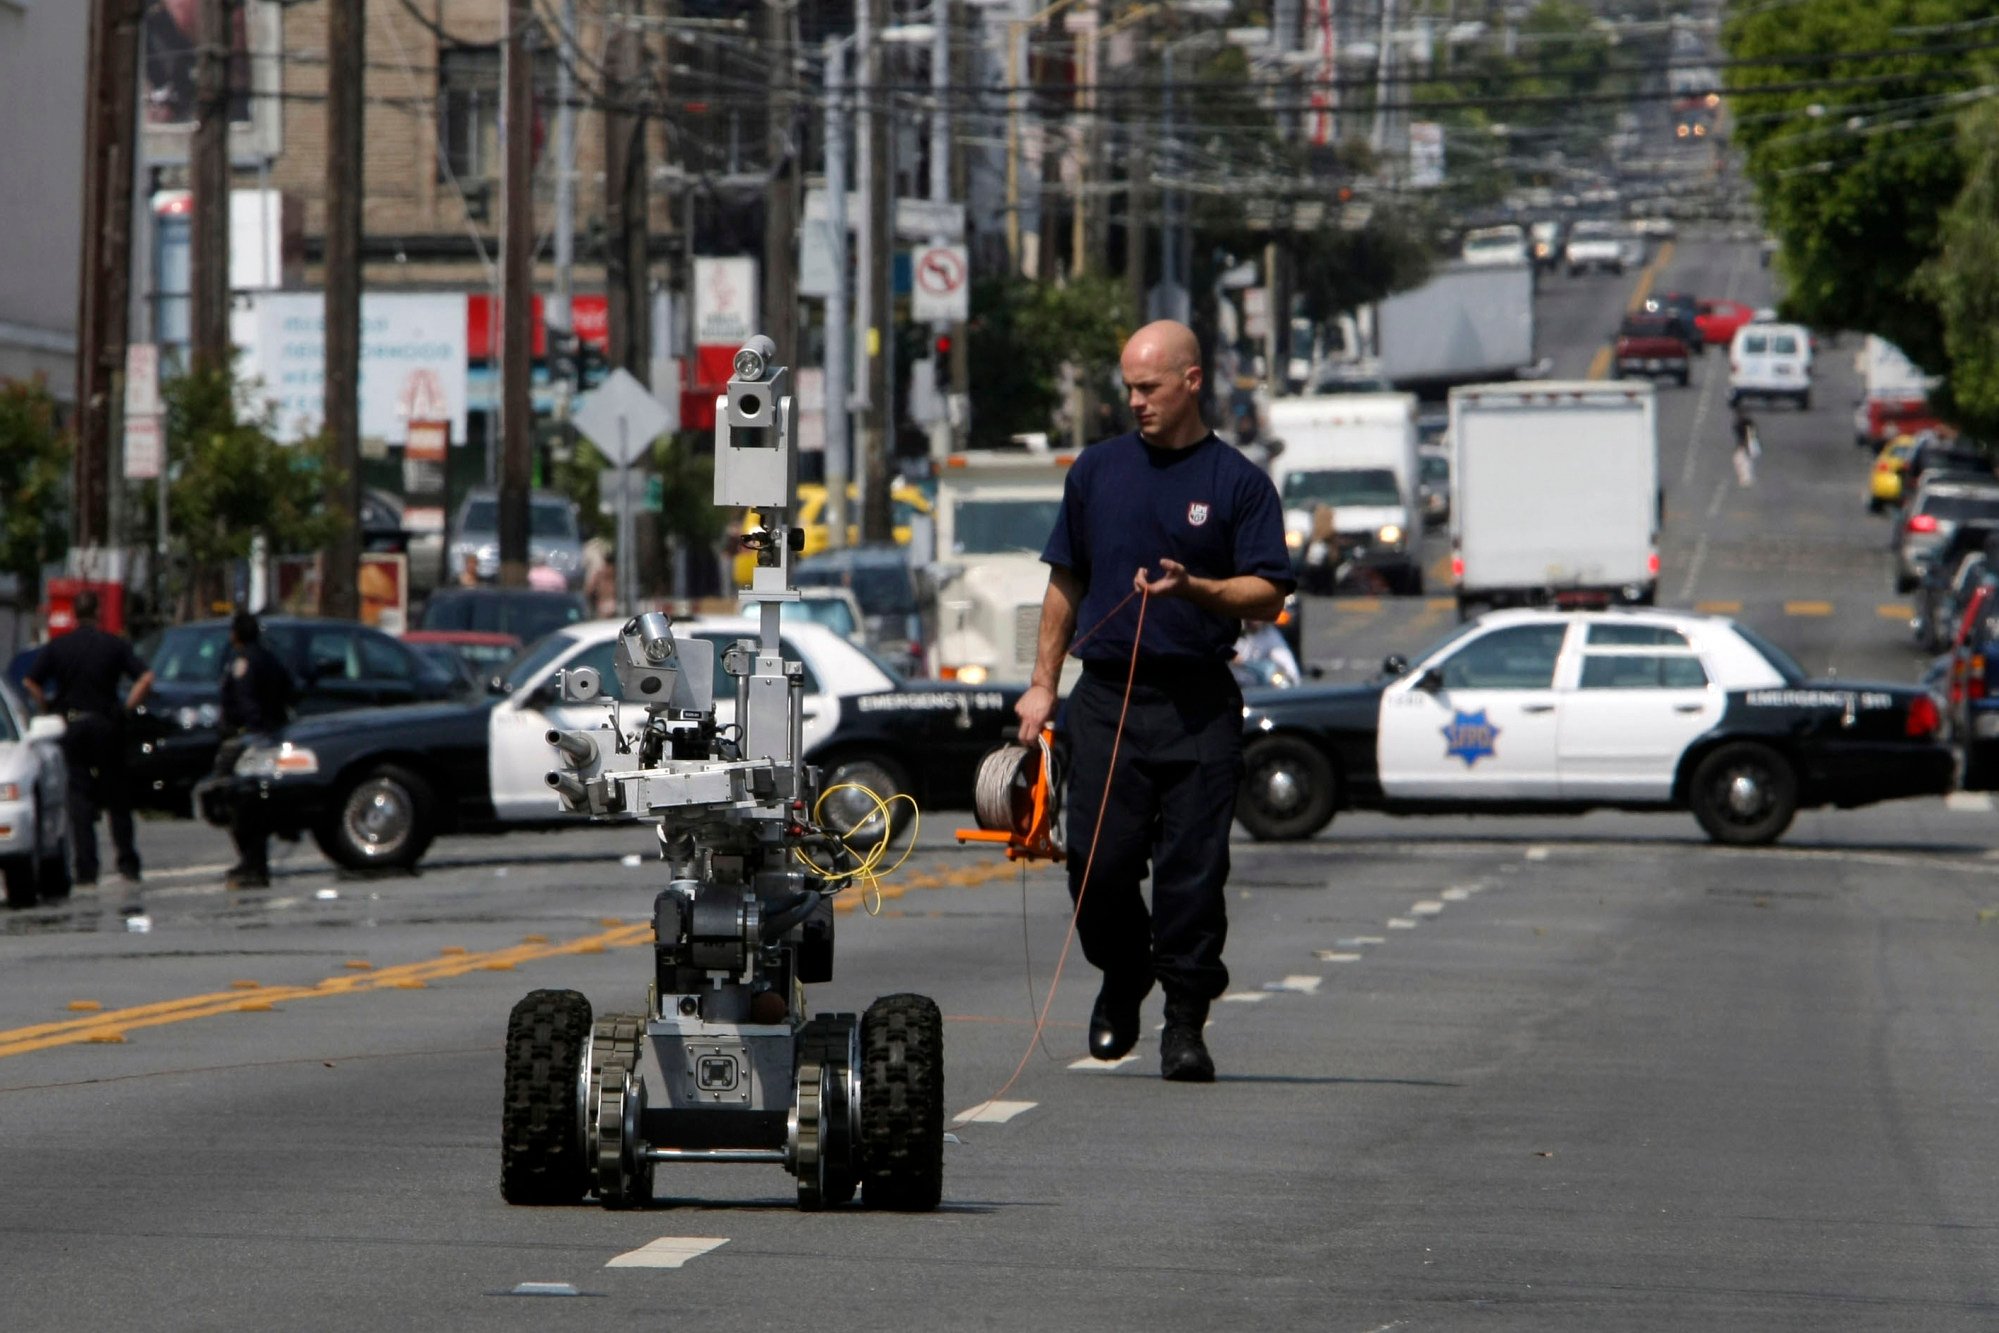 San Francisco slams brakes on ‘killer robots’ plan for police after public outcry